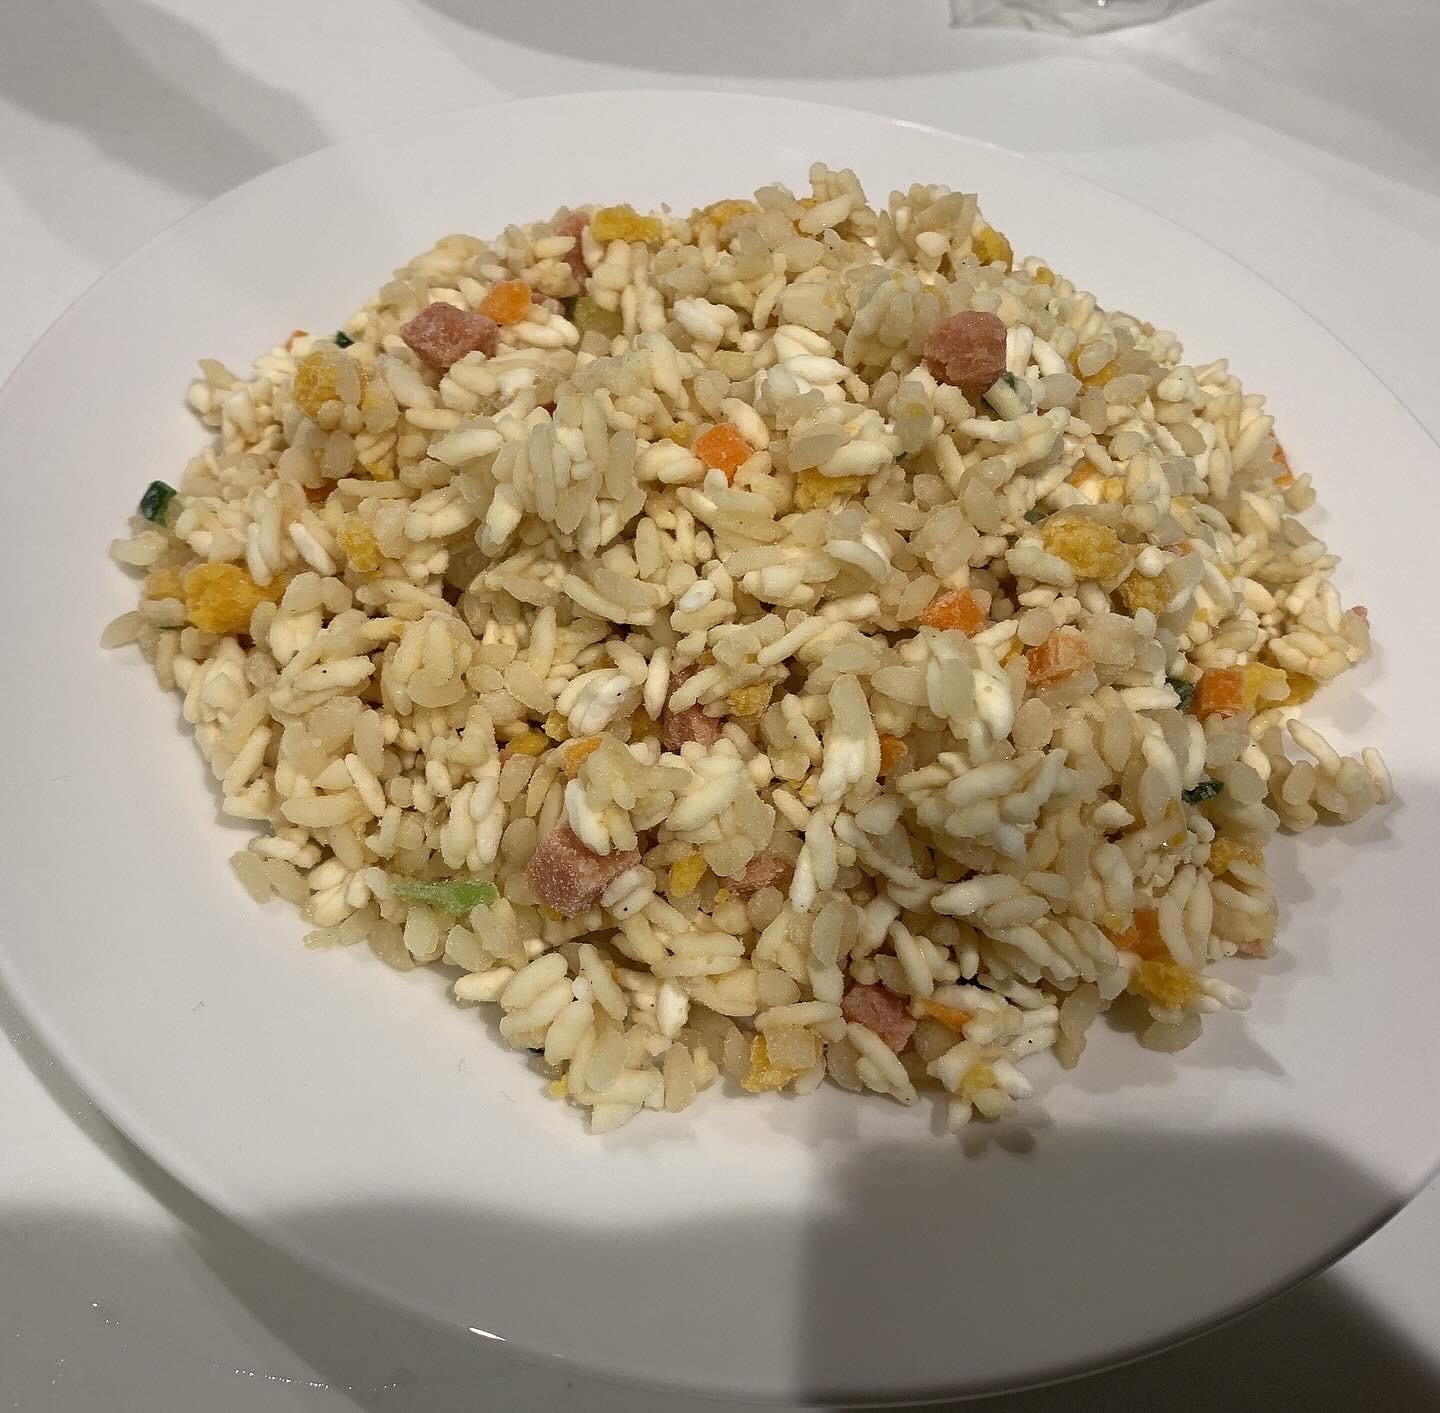 BEYOND FREE(ビヨンドフリー) こんにゃく米とお米で作った炒飯の良い点・メリットに関するはまちママさんの口コミ画像2